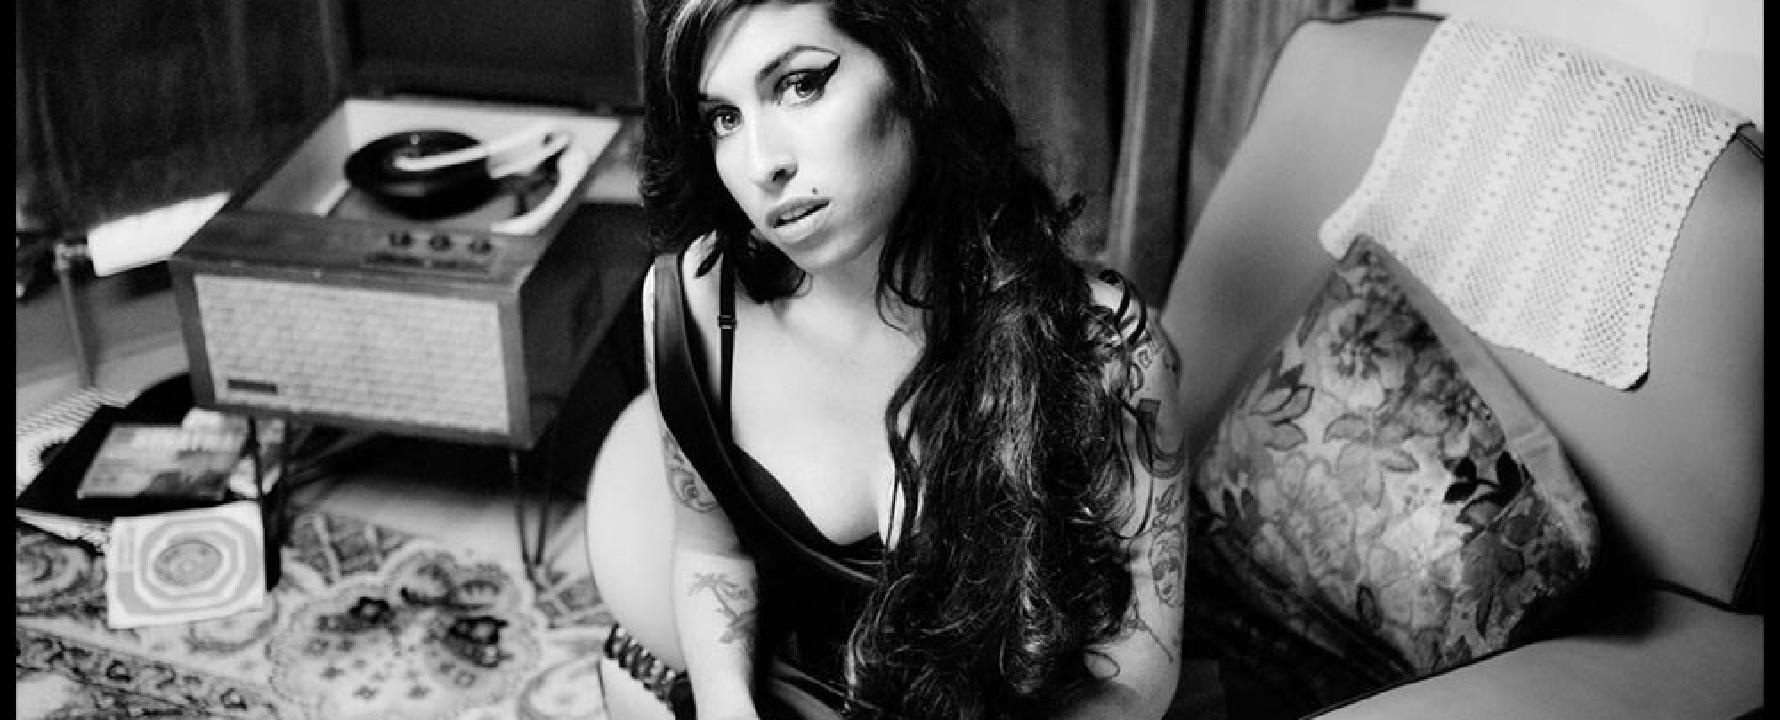 Fotografía promocional de Amy Winehouse